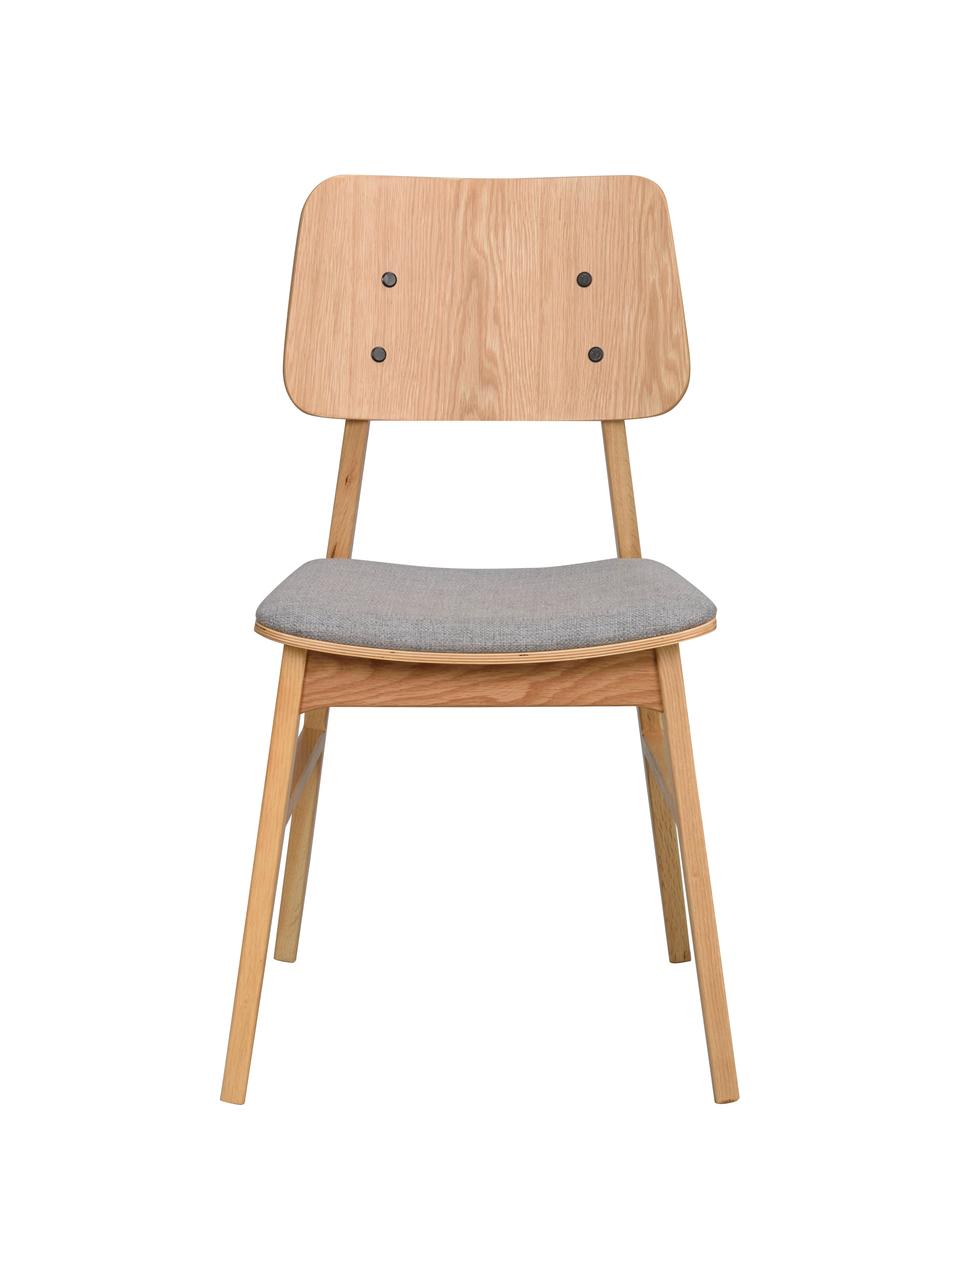 Holzstühle Nagano mit gepolsterter Sitzfläche, 2 Stück, Bezug: 100 % Polyester Der hochw, Webstoff Hellgrau, Helles Eichenholz, B 50 x T 51 cm